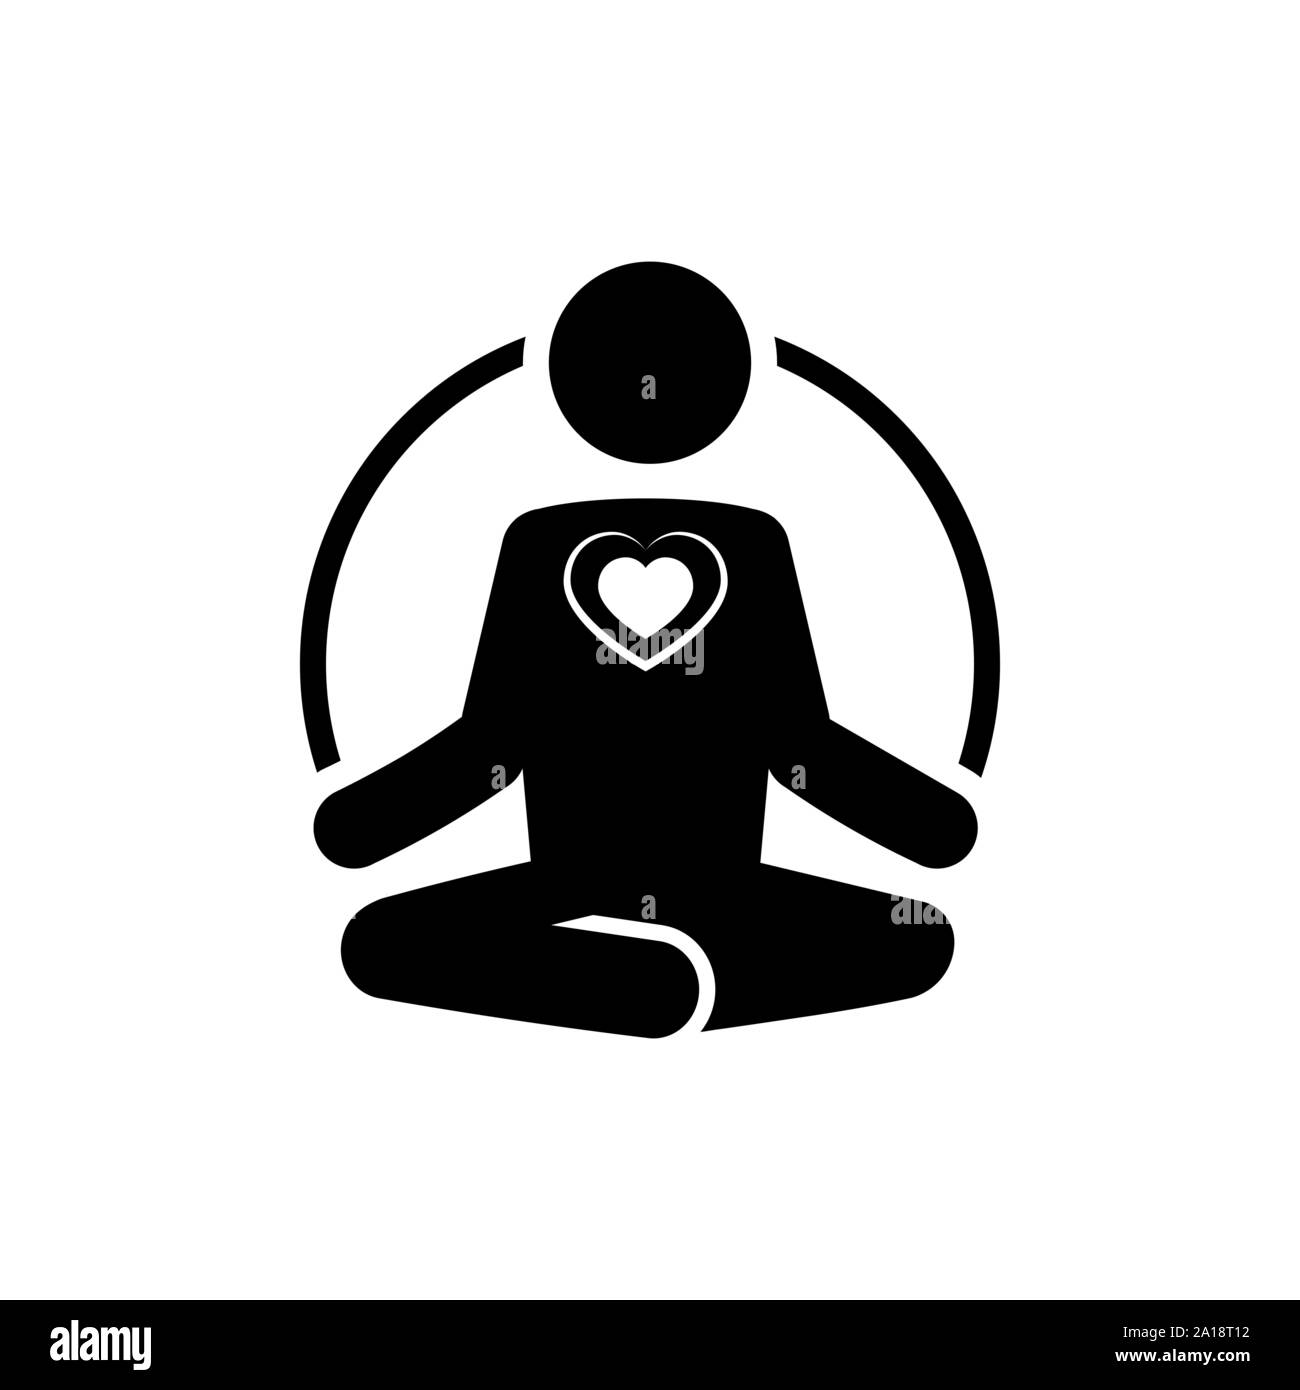 https://c8.alamy.com/compes/2a18t12/yoga-icono-con-corazon-meditar-y-amar-el-concepto-2a18t12.jpg